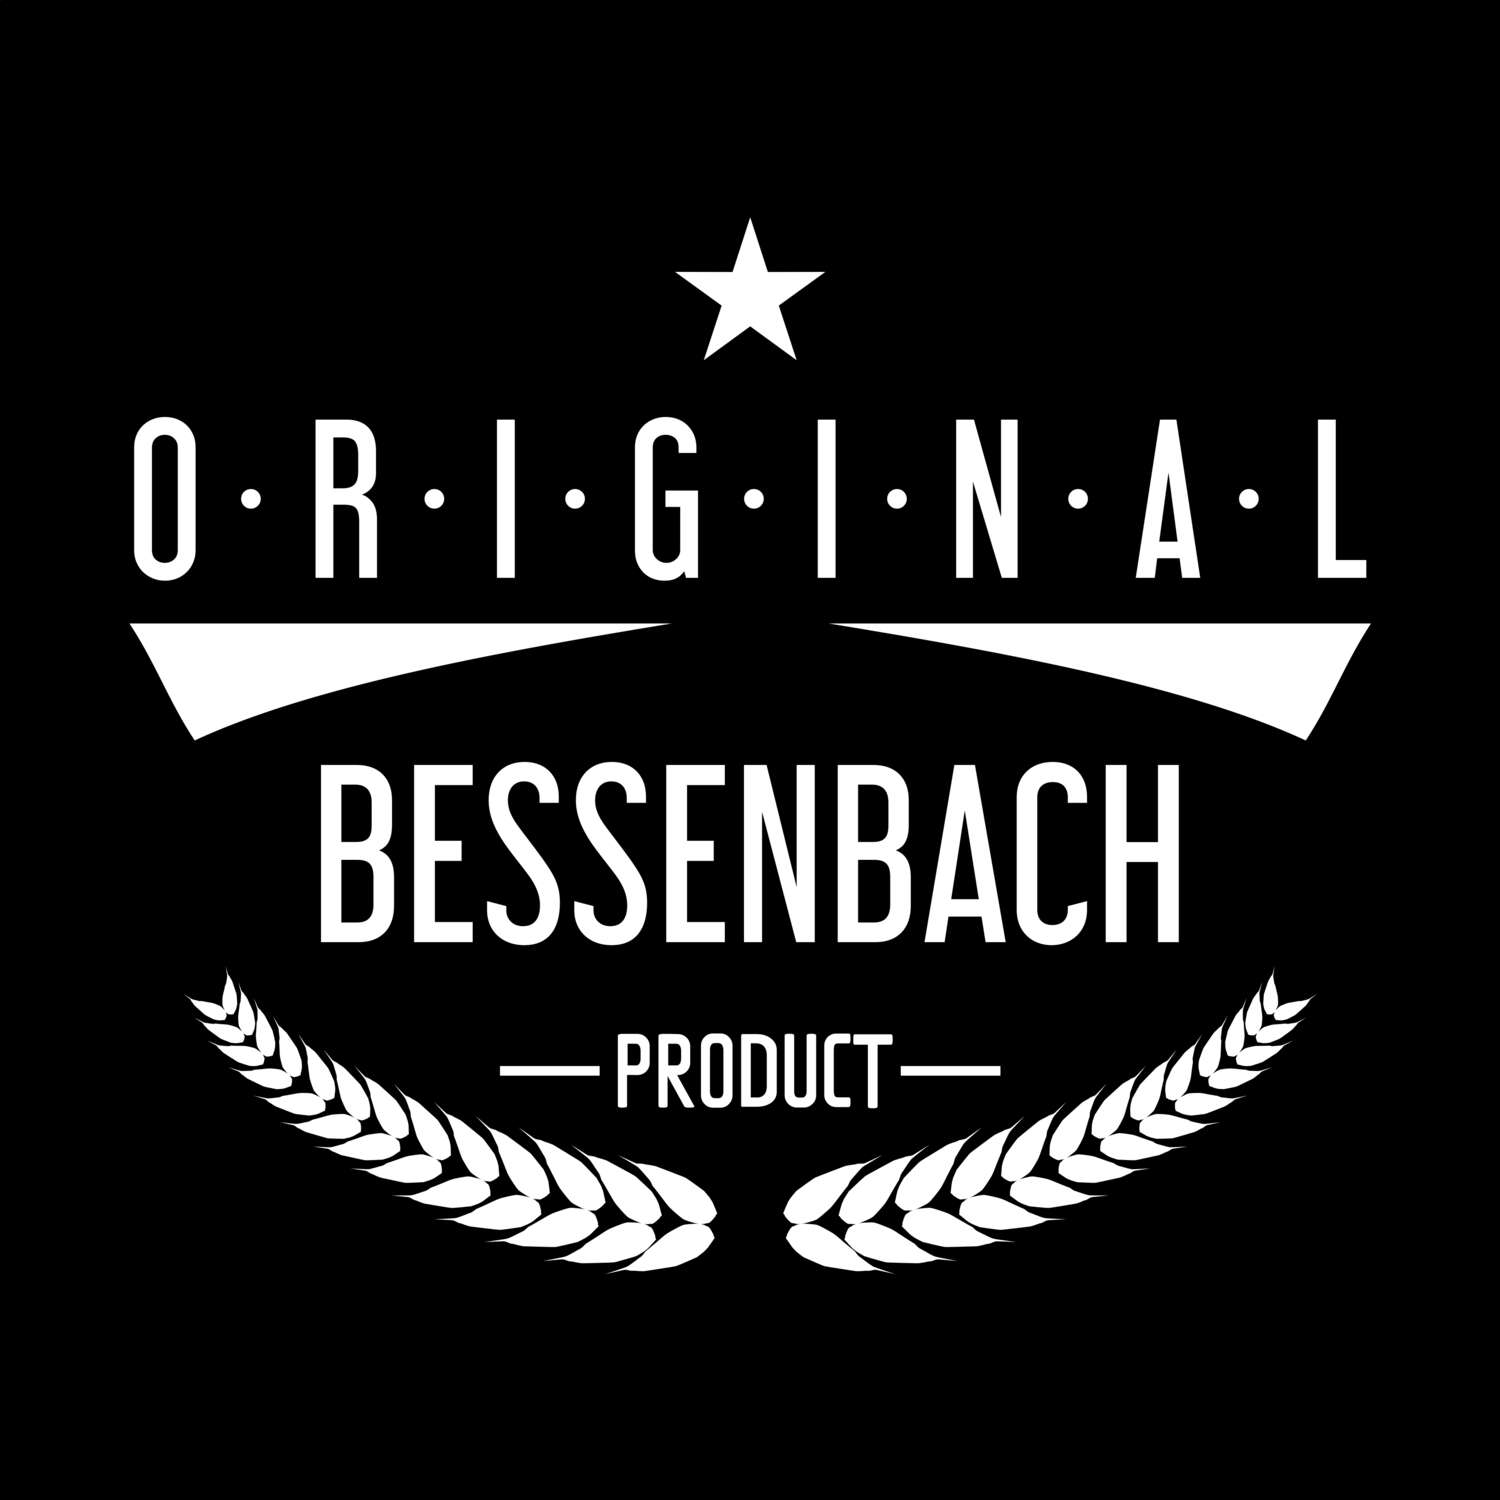 Bessenbach T-Shirt »Original Product«